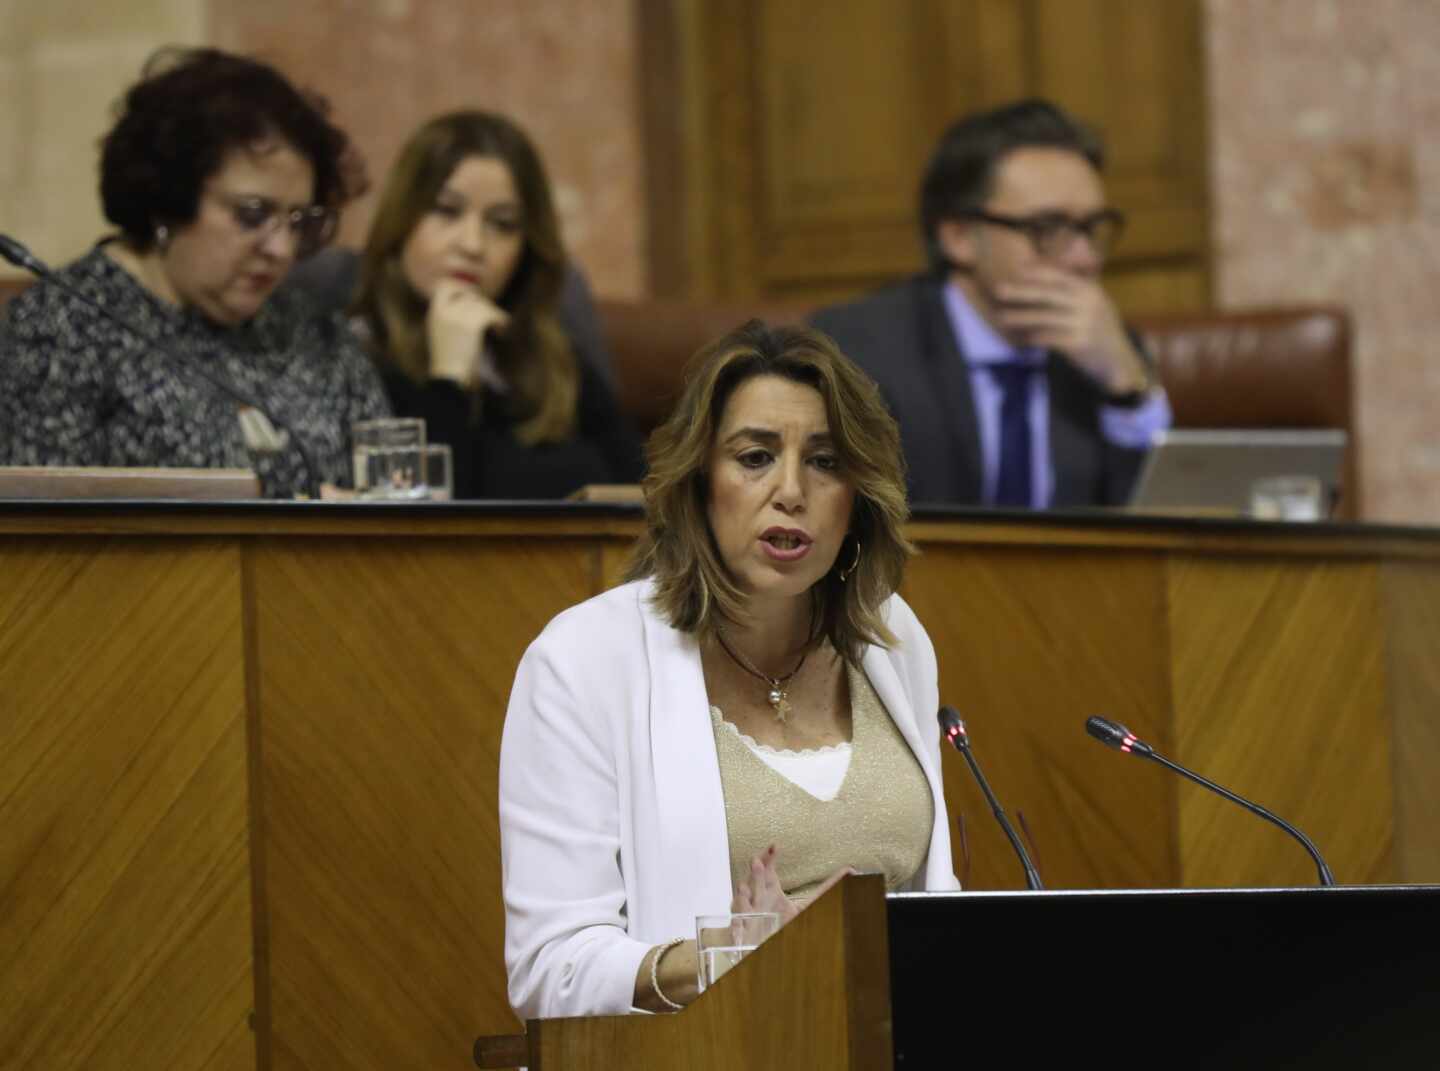 Susana Díaz sobre la abstención a Rajoy: "Me equivoqué yo y Pedro acertó"